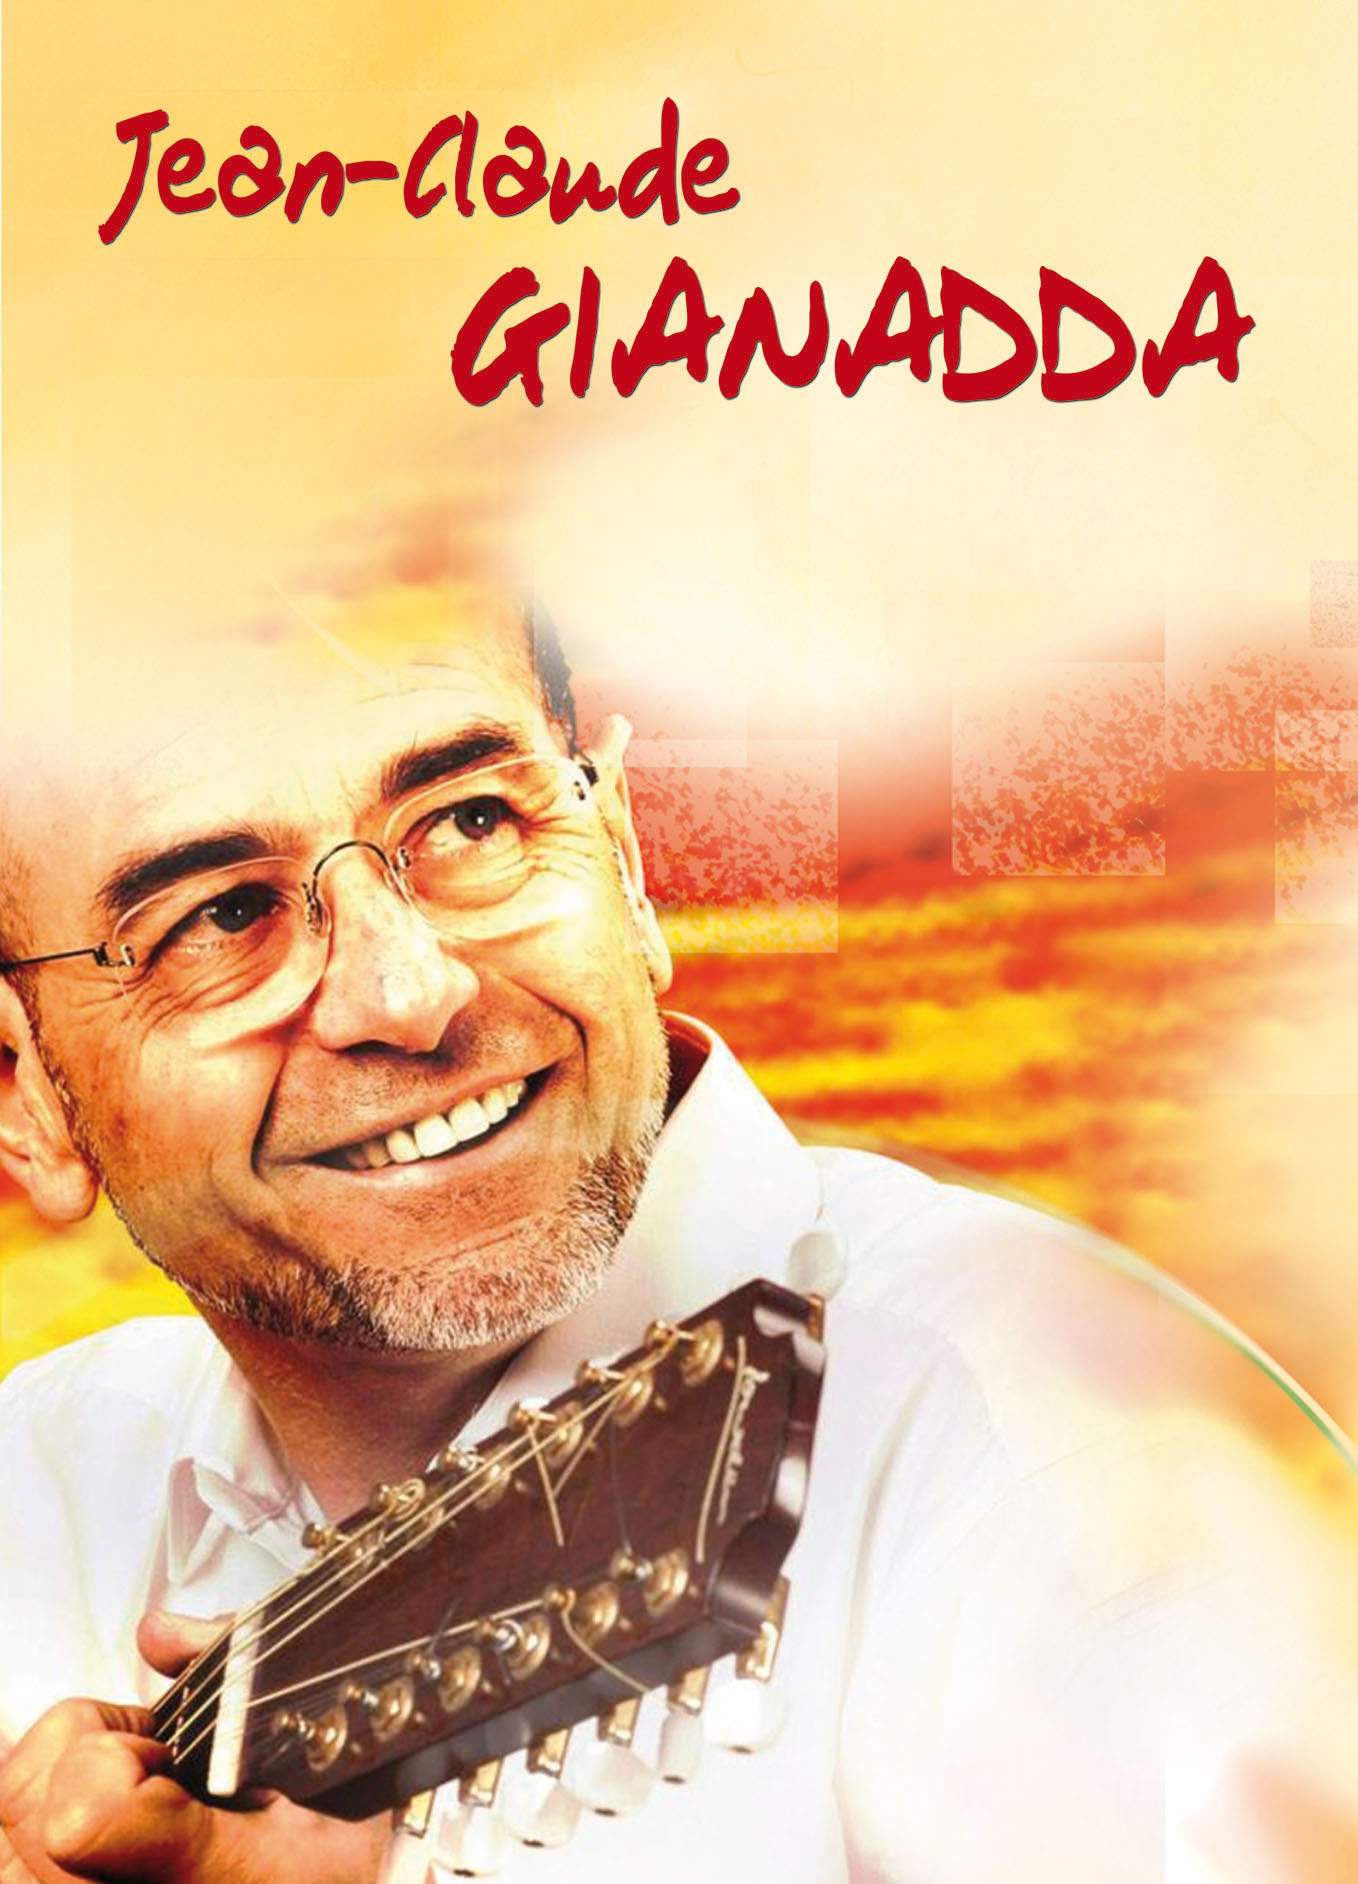 Love Jean-Claude Gianadda